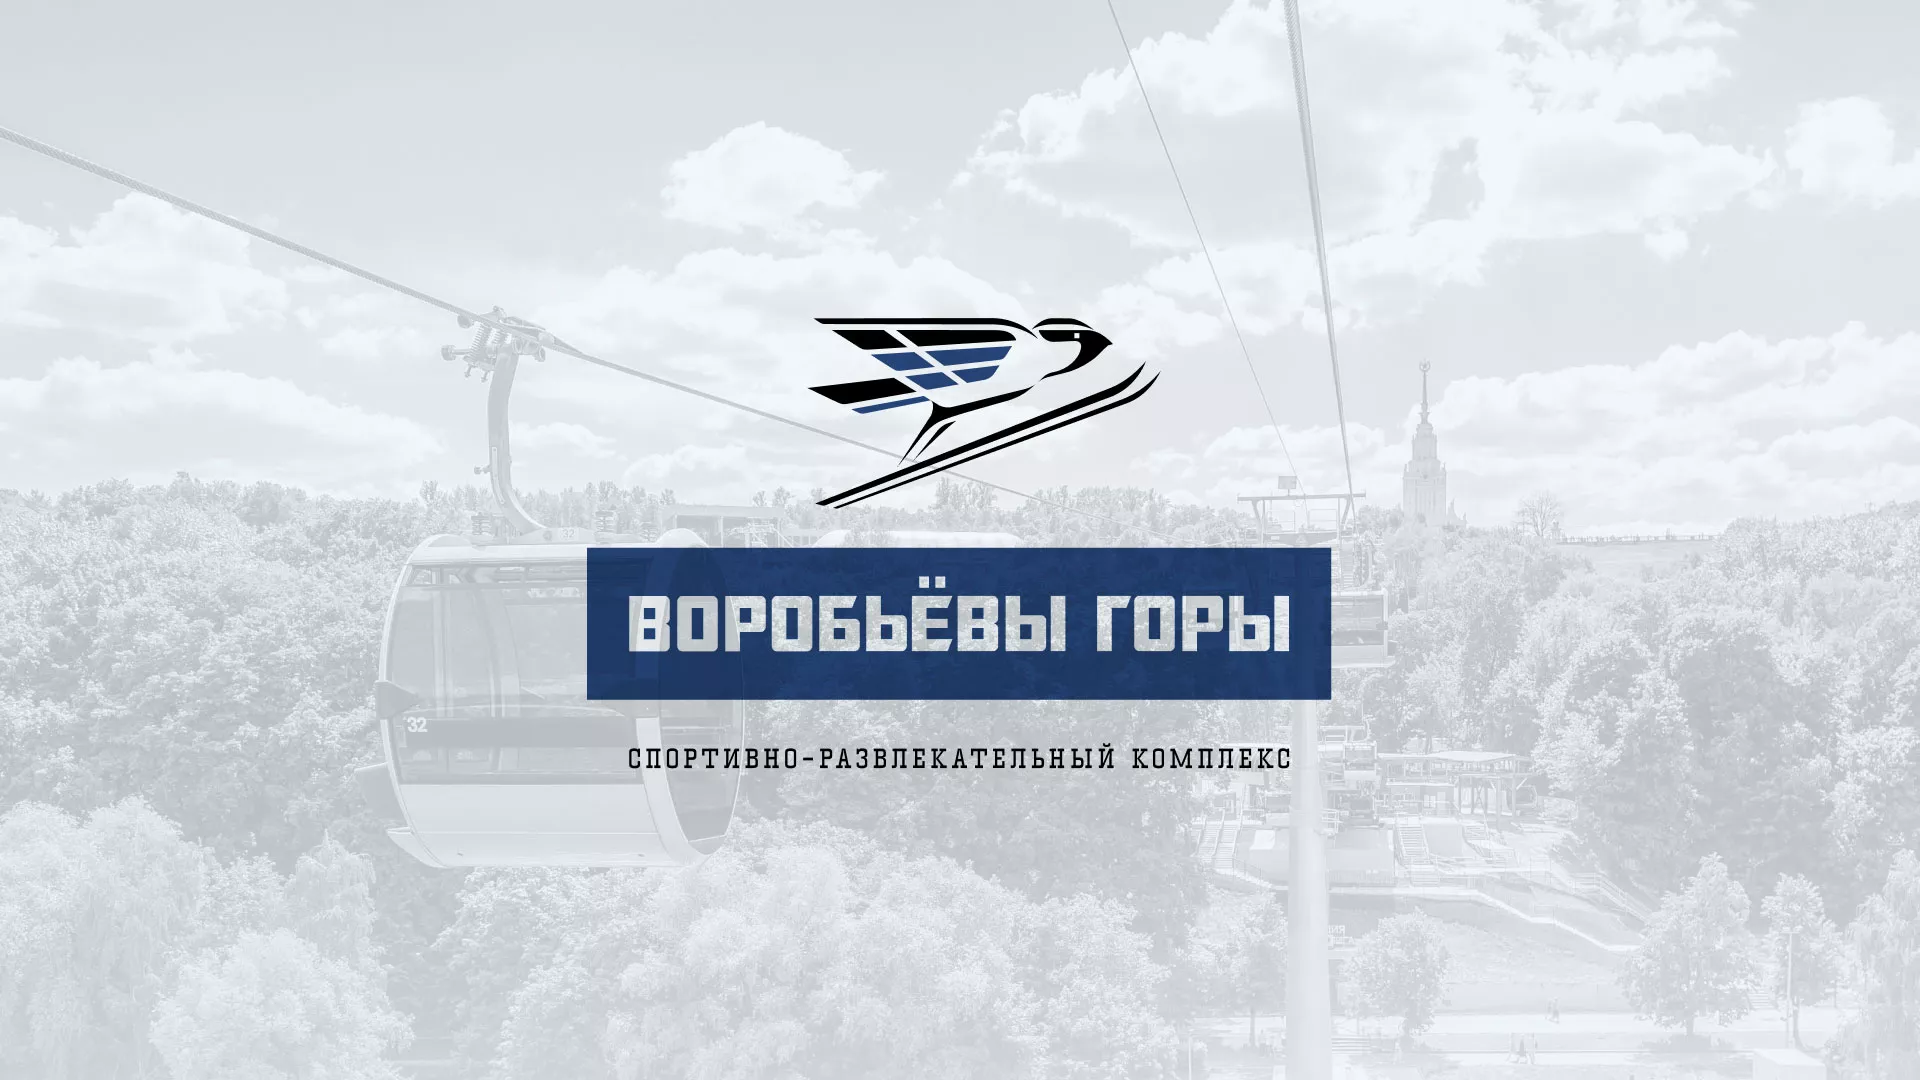 Разработка сайта в Таганроге для спортивно-развлекательного комплекса «Воробьёвы горы»